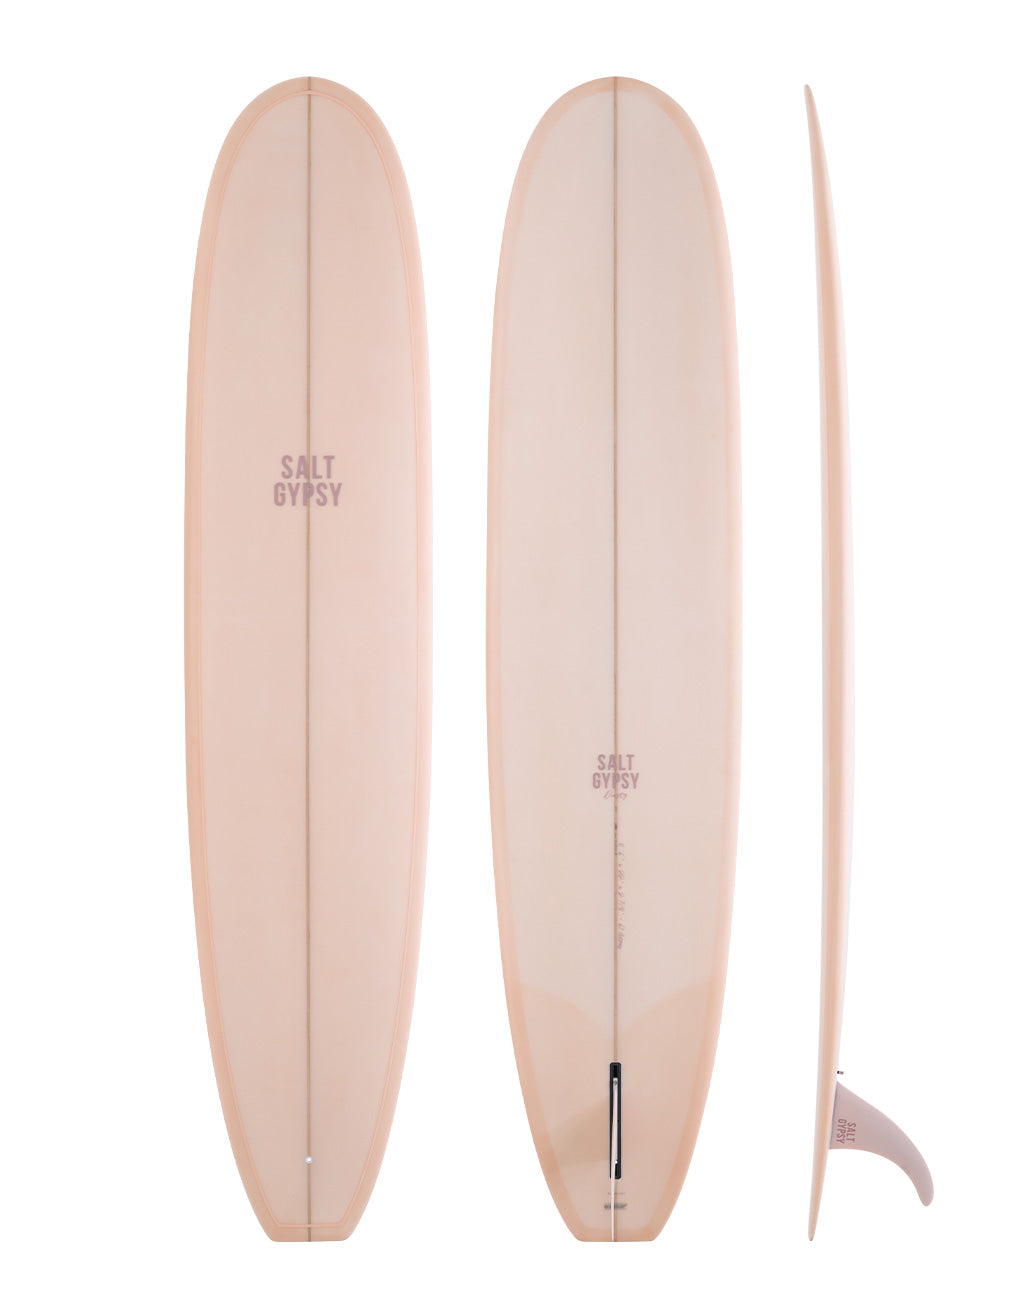 Salt Gypsy Surfboards - Dusty blush pink longboard